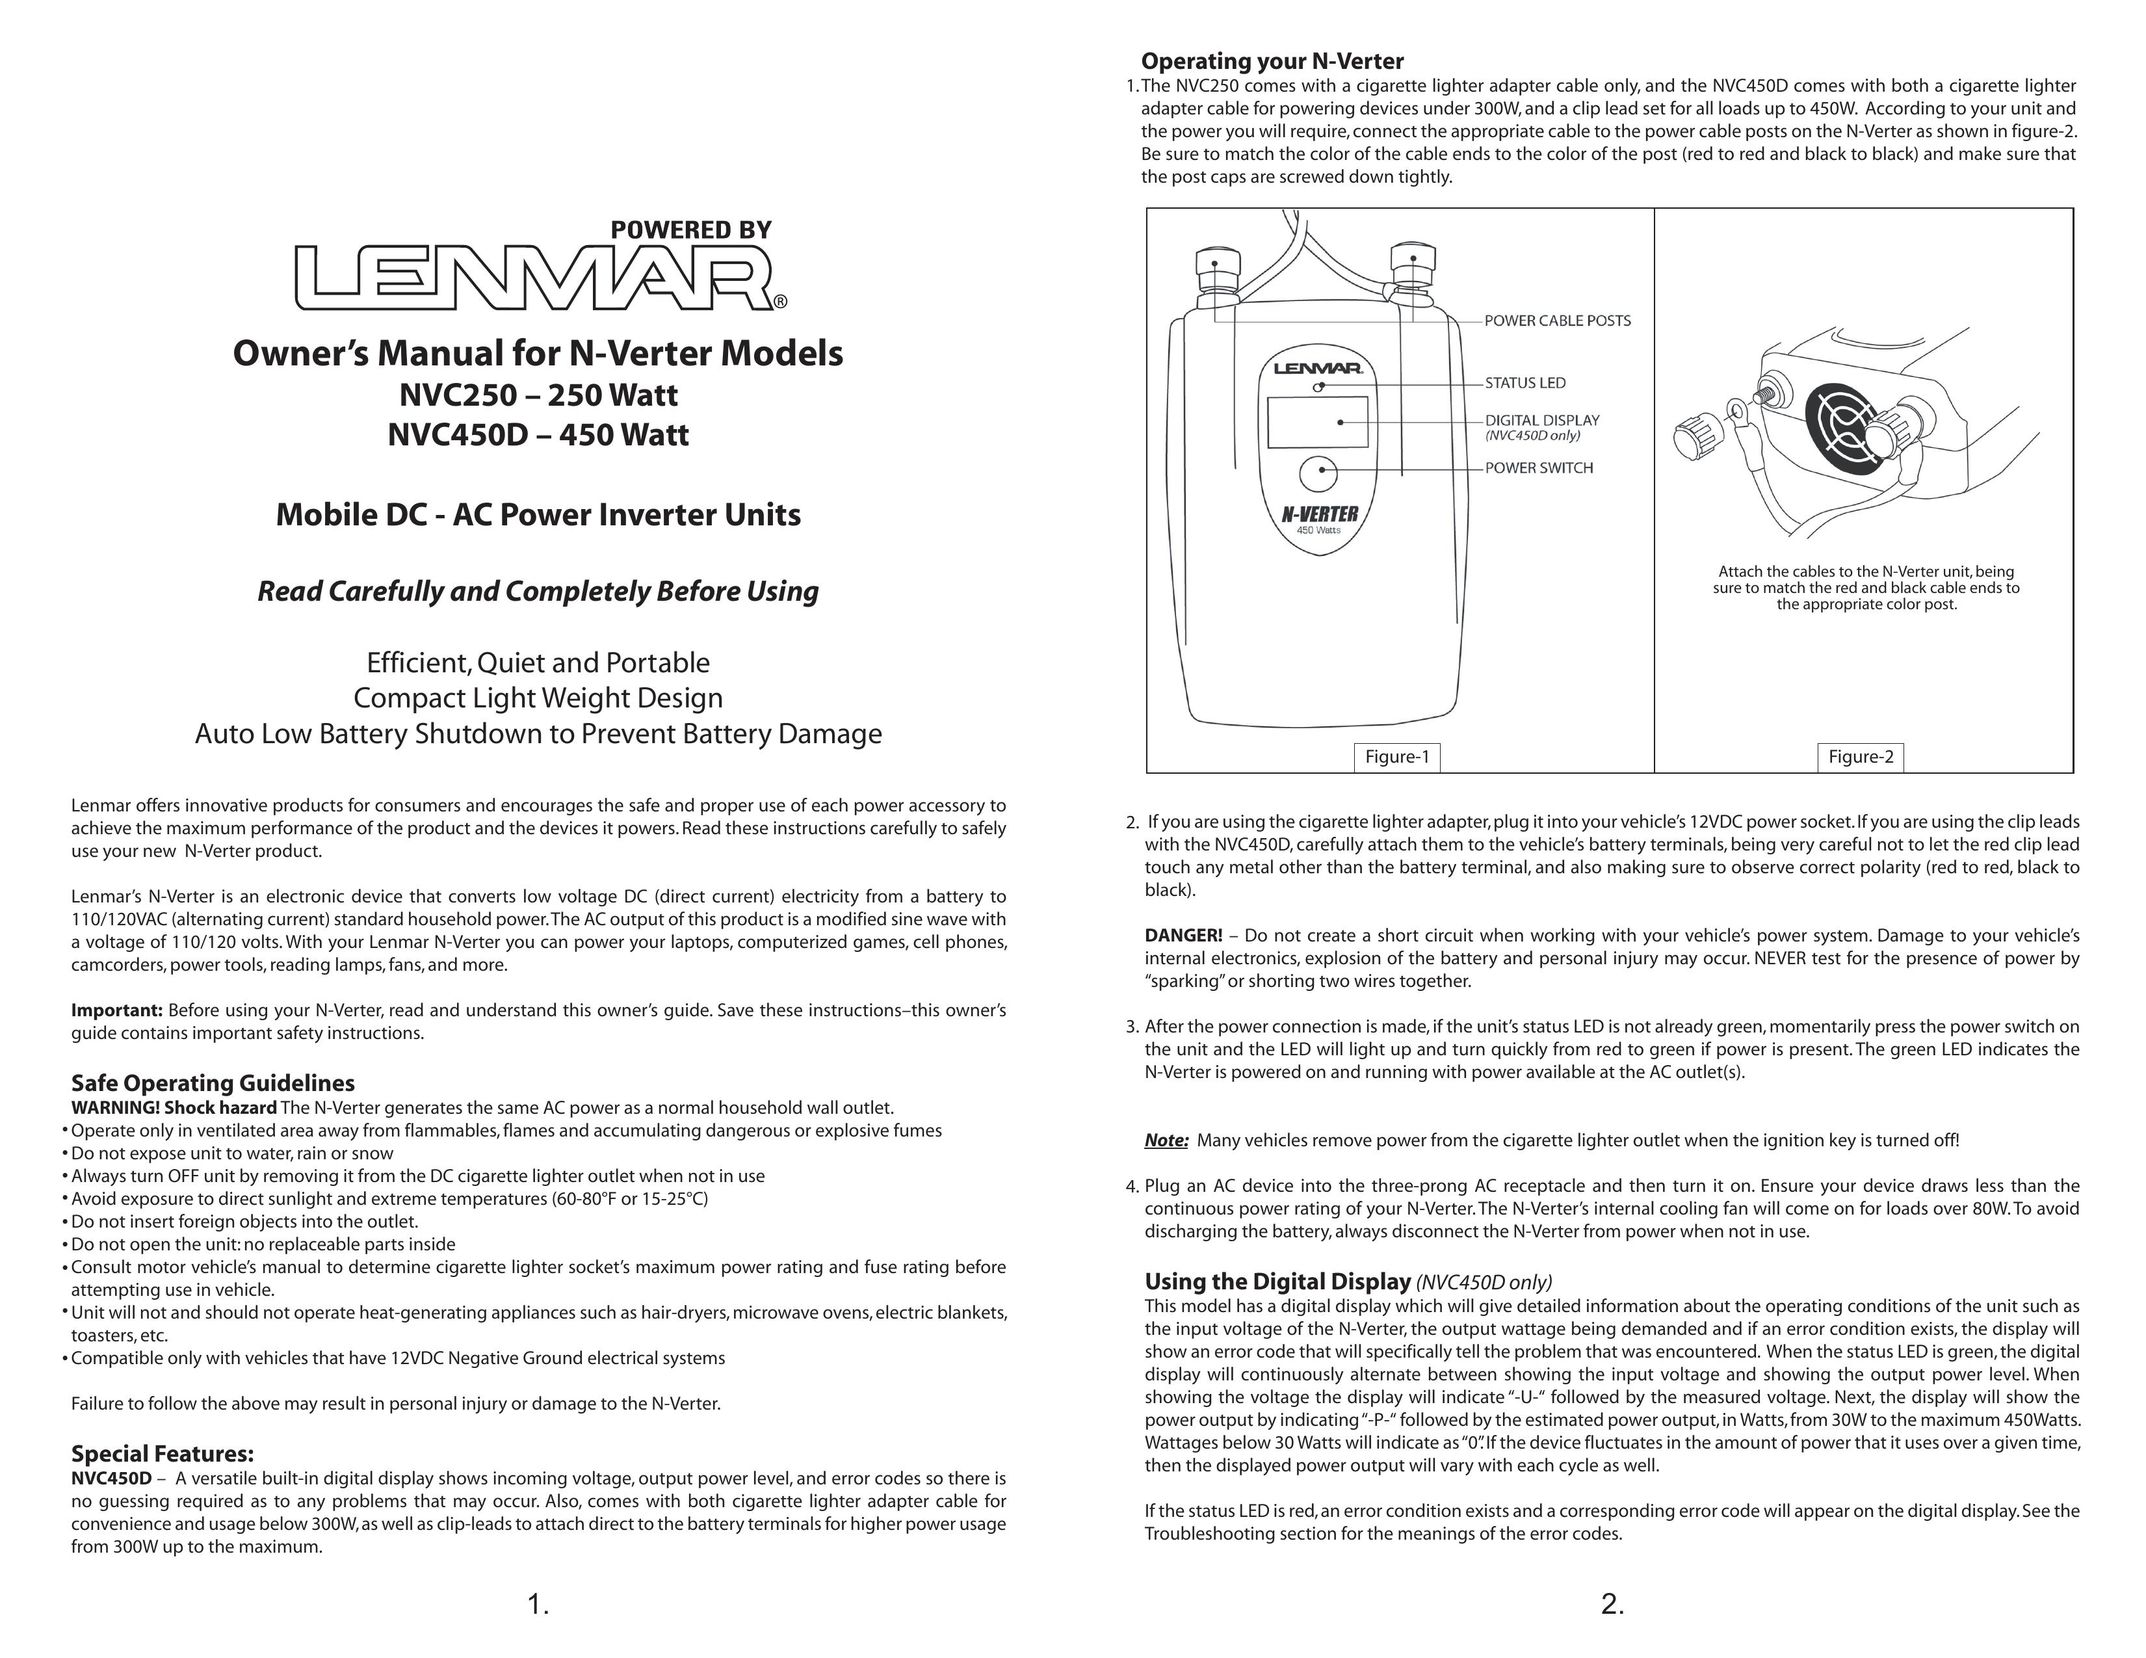 Lenmar Enterprises NVC450D Car Stereo System User Manual